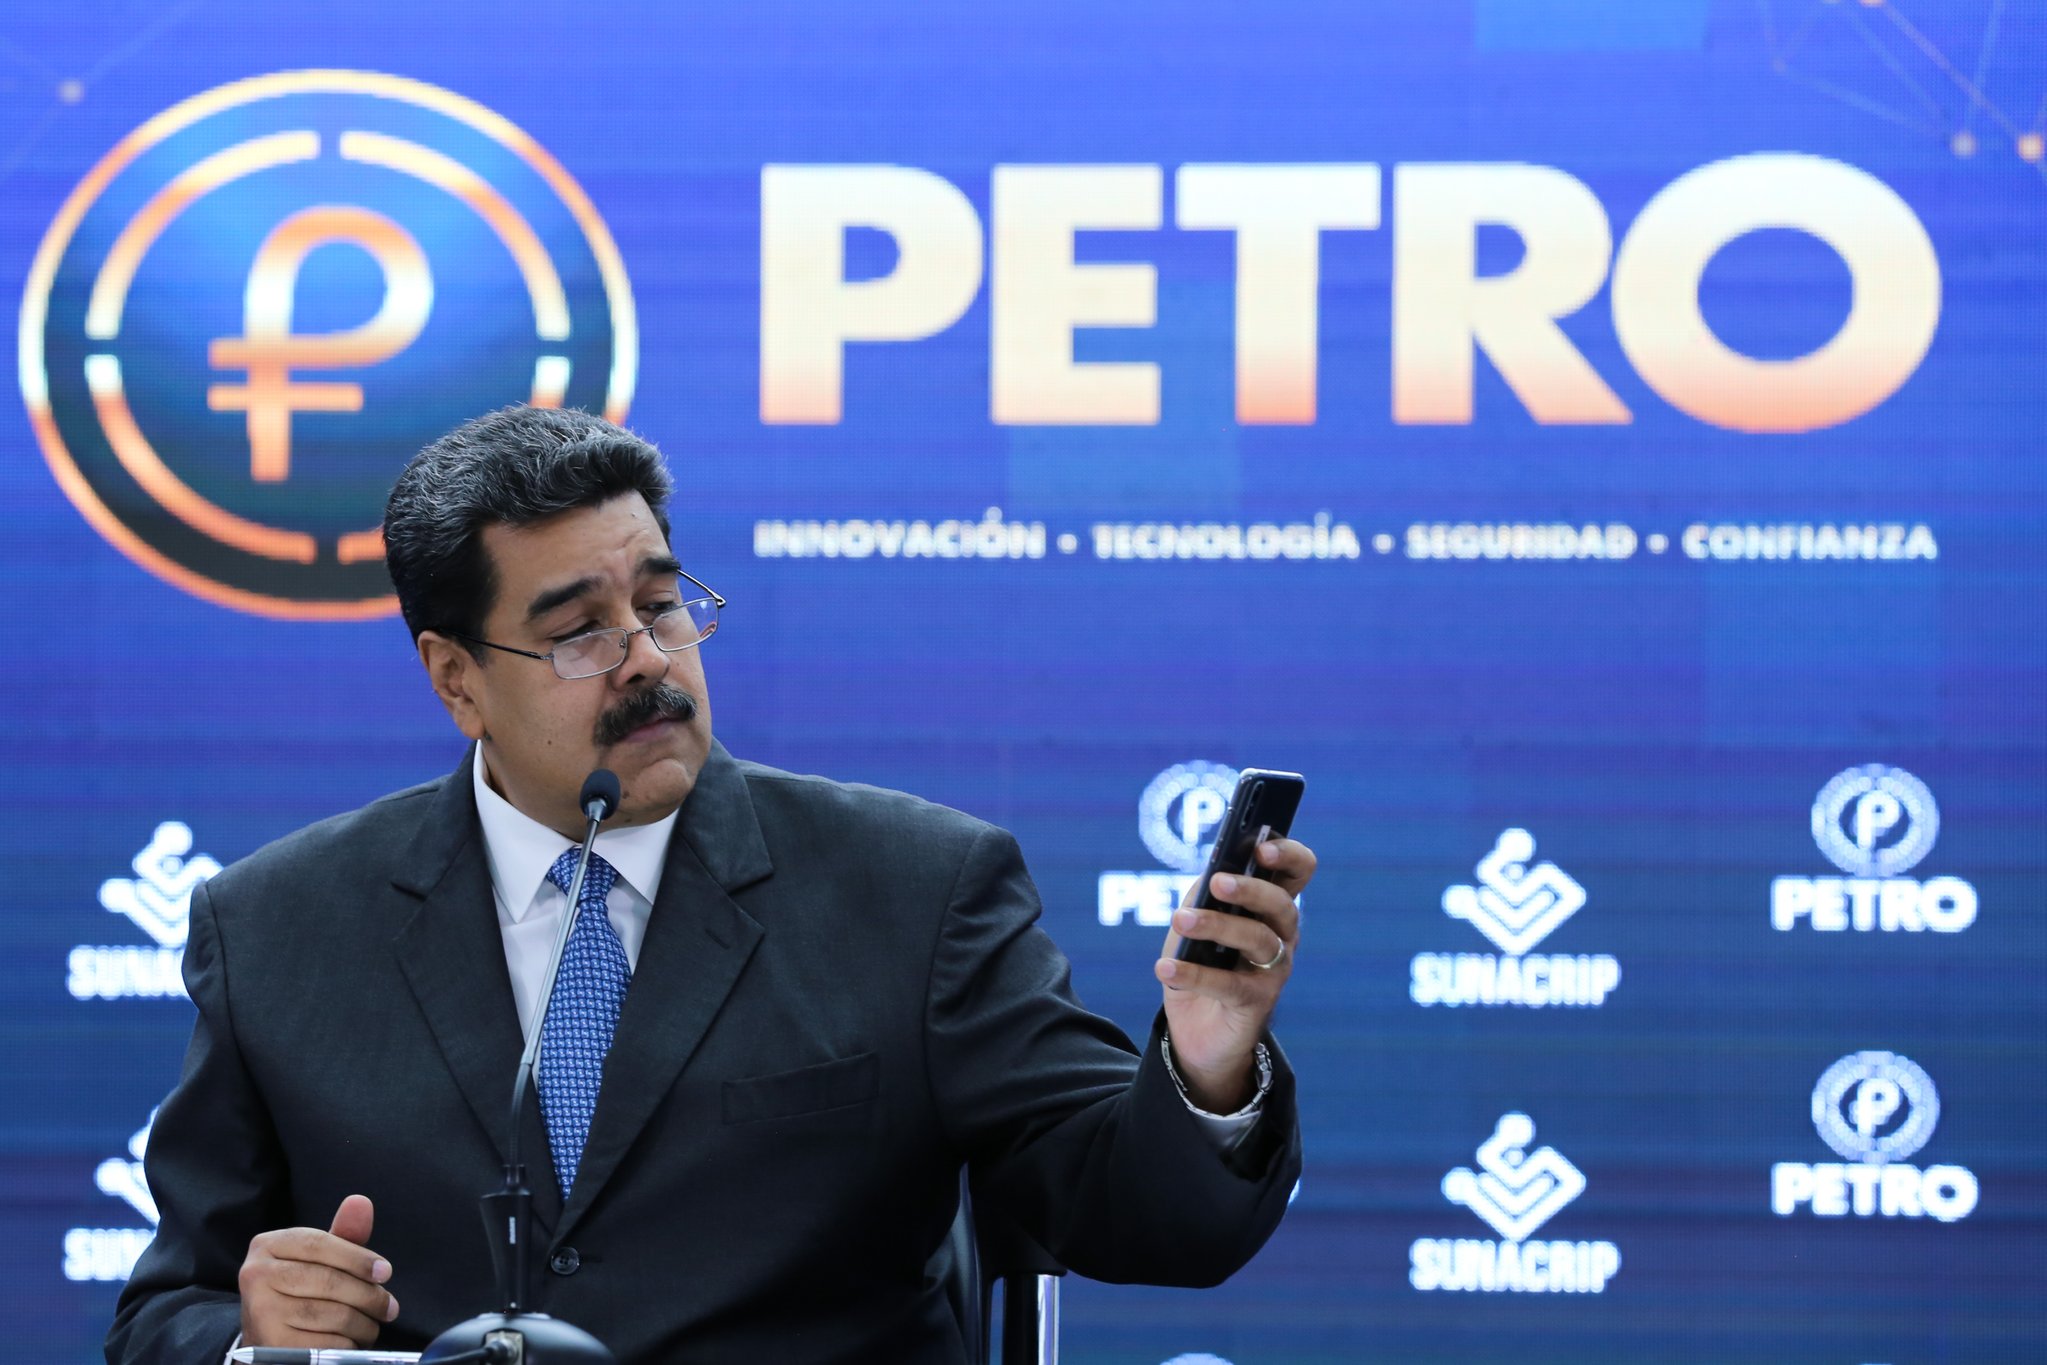 Alerta ante una posible reimposición de sanciones, el régimen de Maduro revive al petro